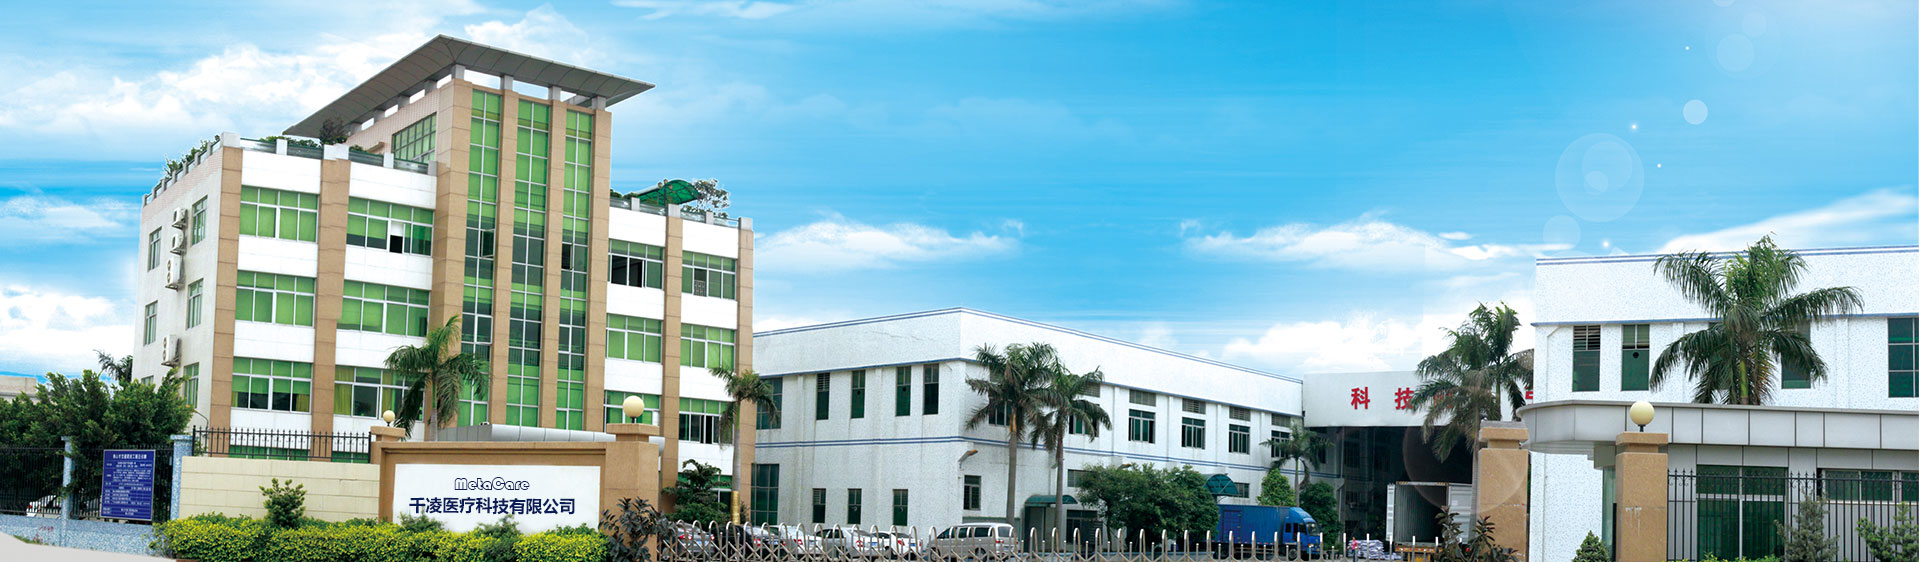 Metacare factory building